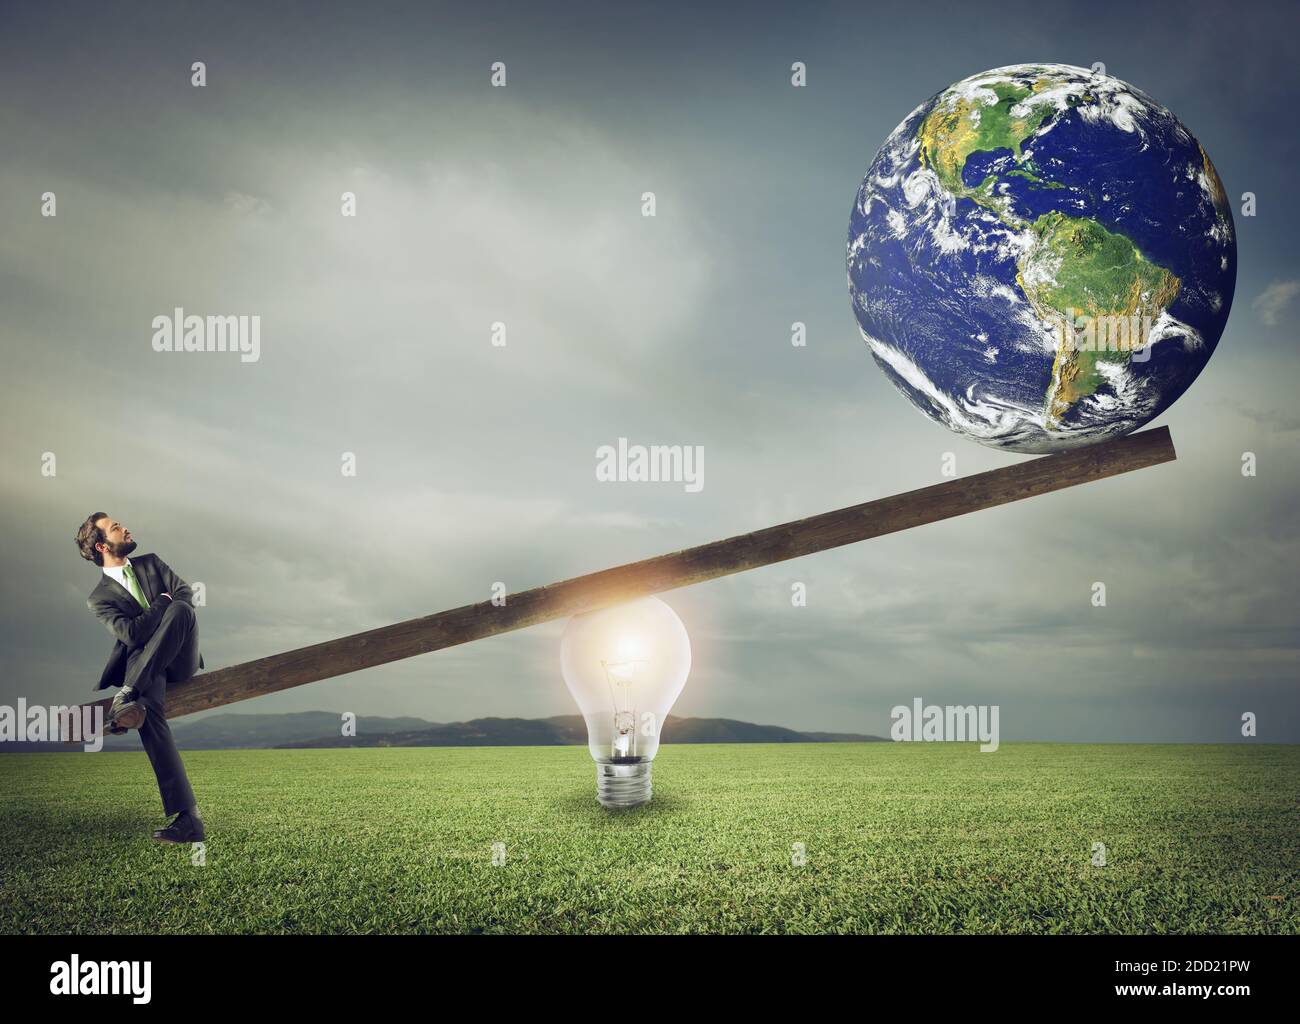 Homme d'affaires utilise un levier publicitaire d'ampoule pour soulever le monde. Terre fournie par la NASA. Banque D'Images